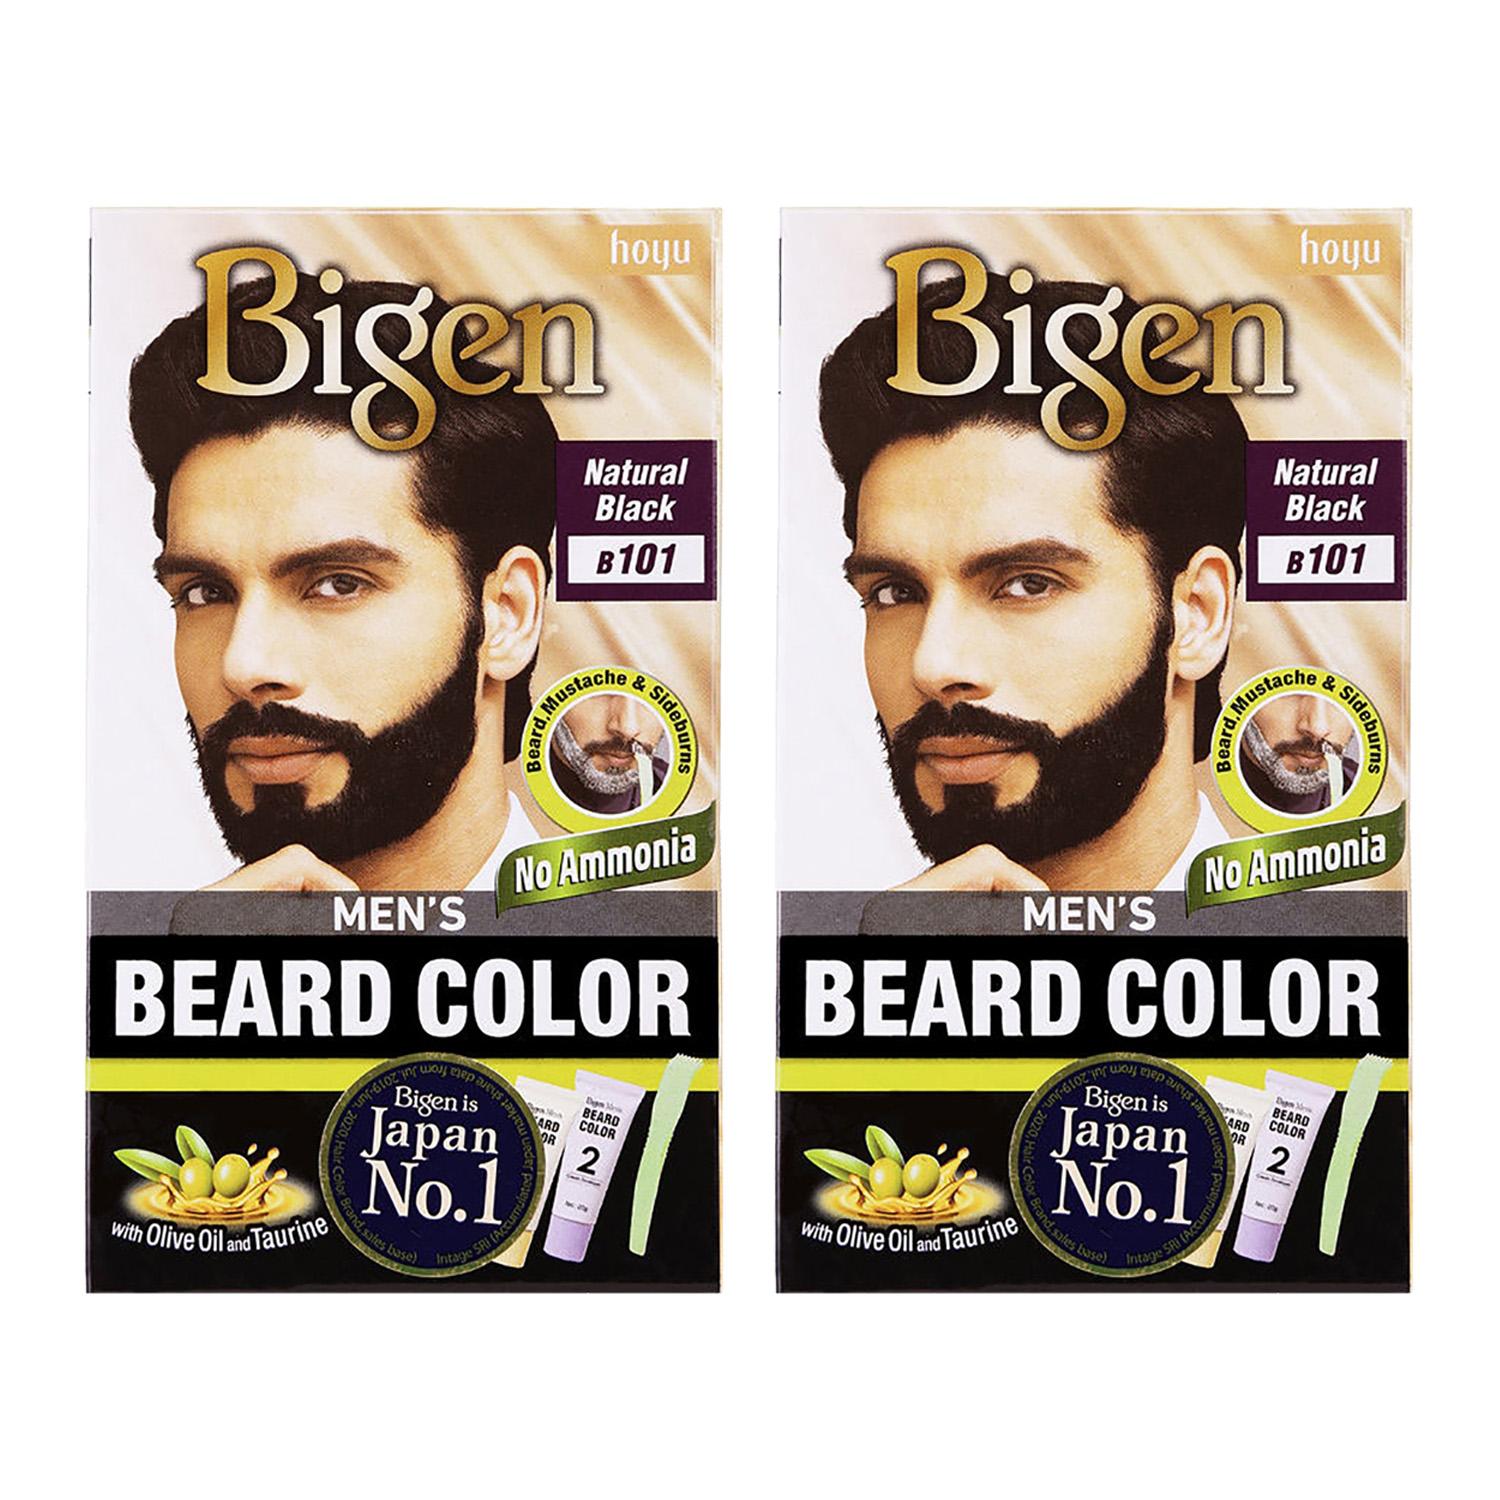 Bigen | Bigen Men'S Beard Color No Ammonia Natural Black B101 (40 g) (Pack Of 2) Combo